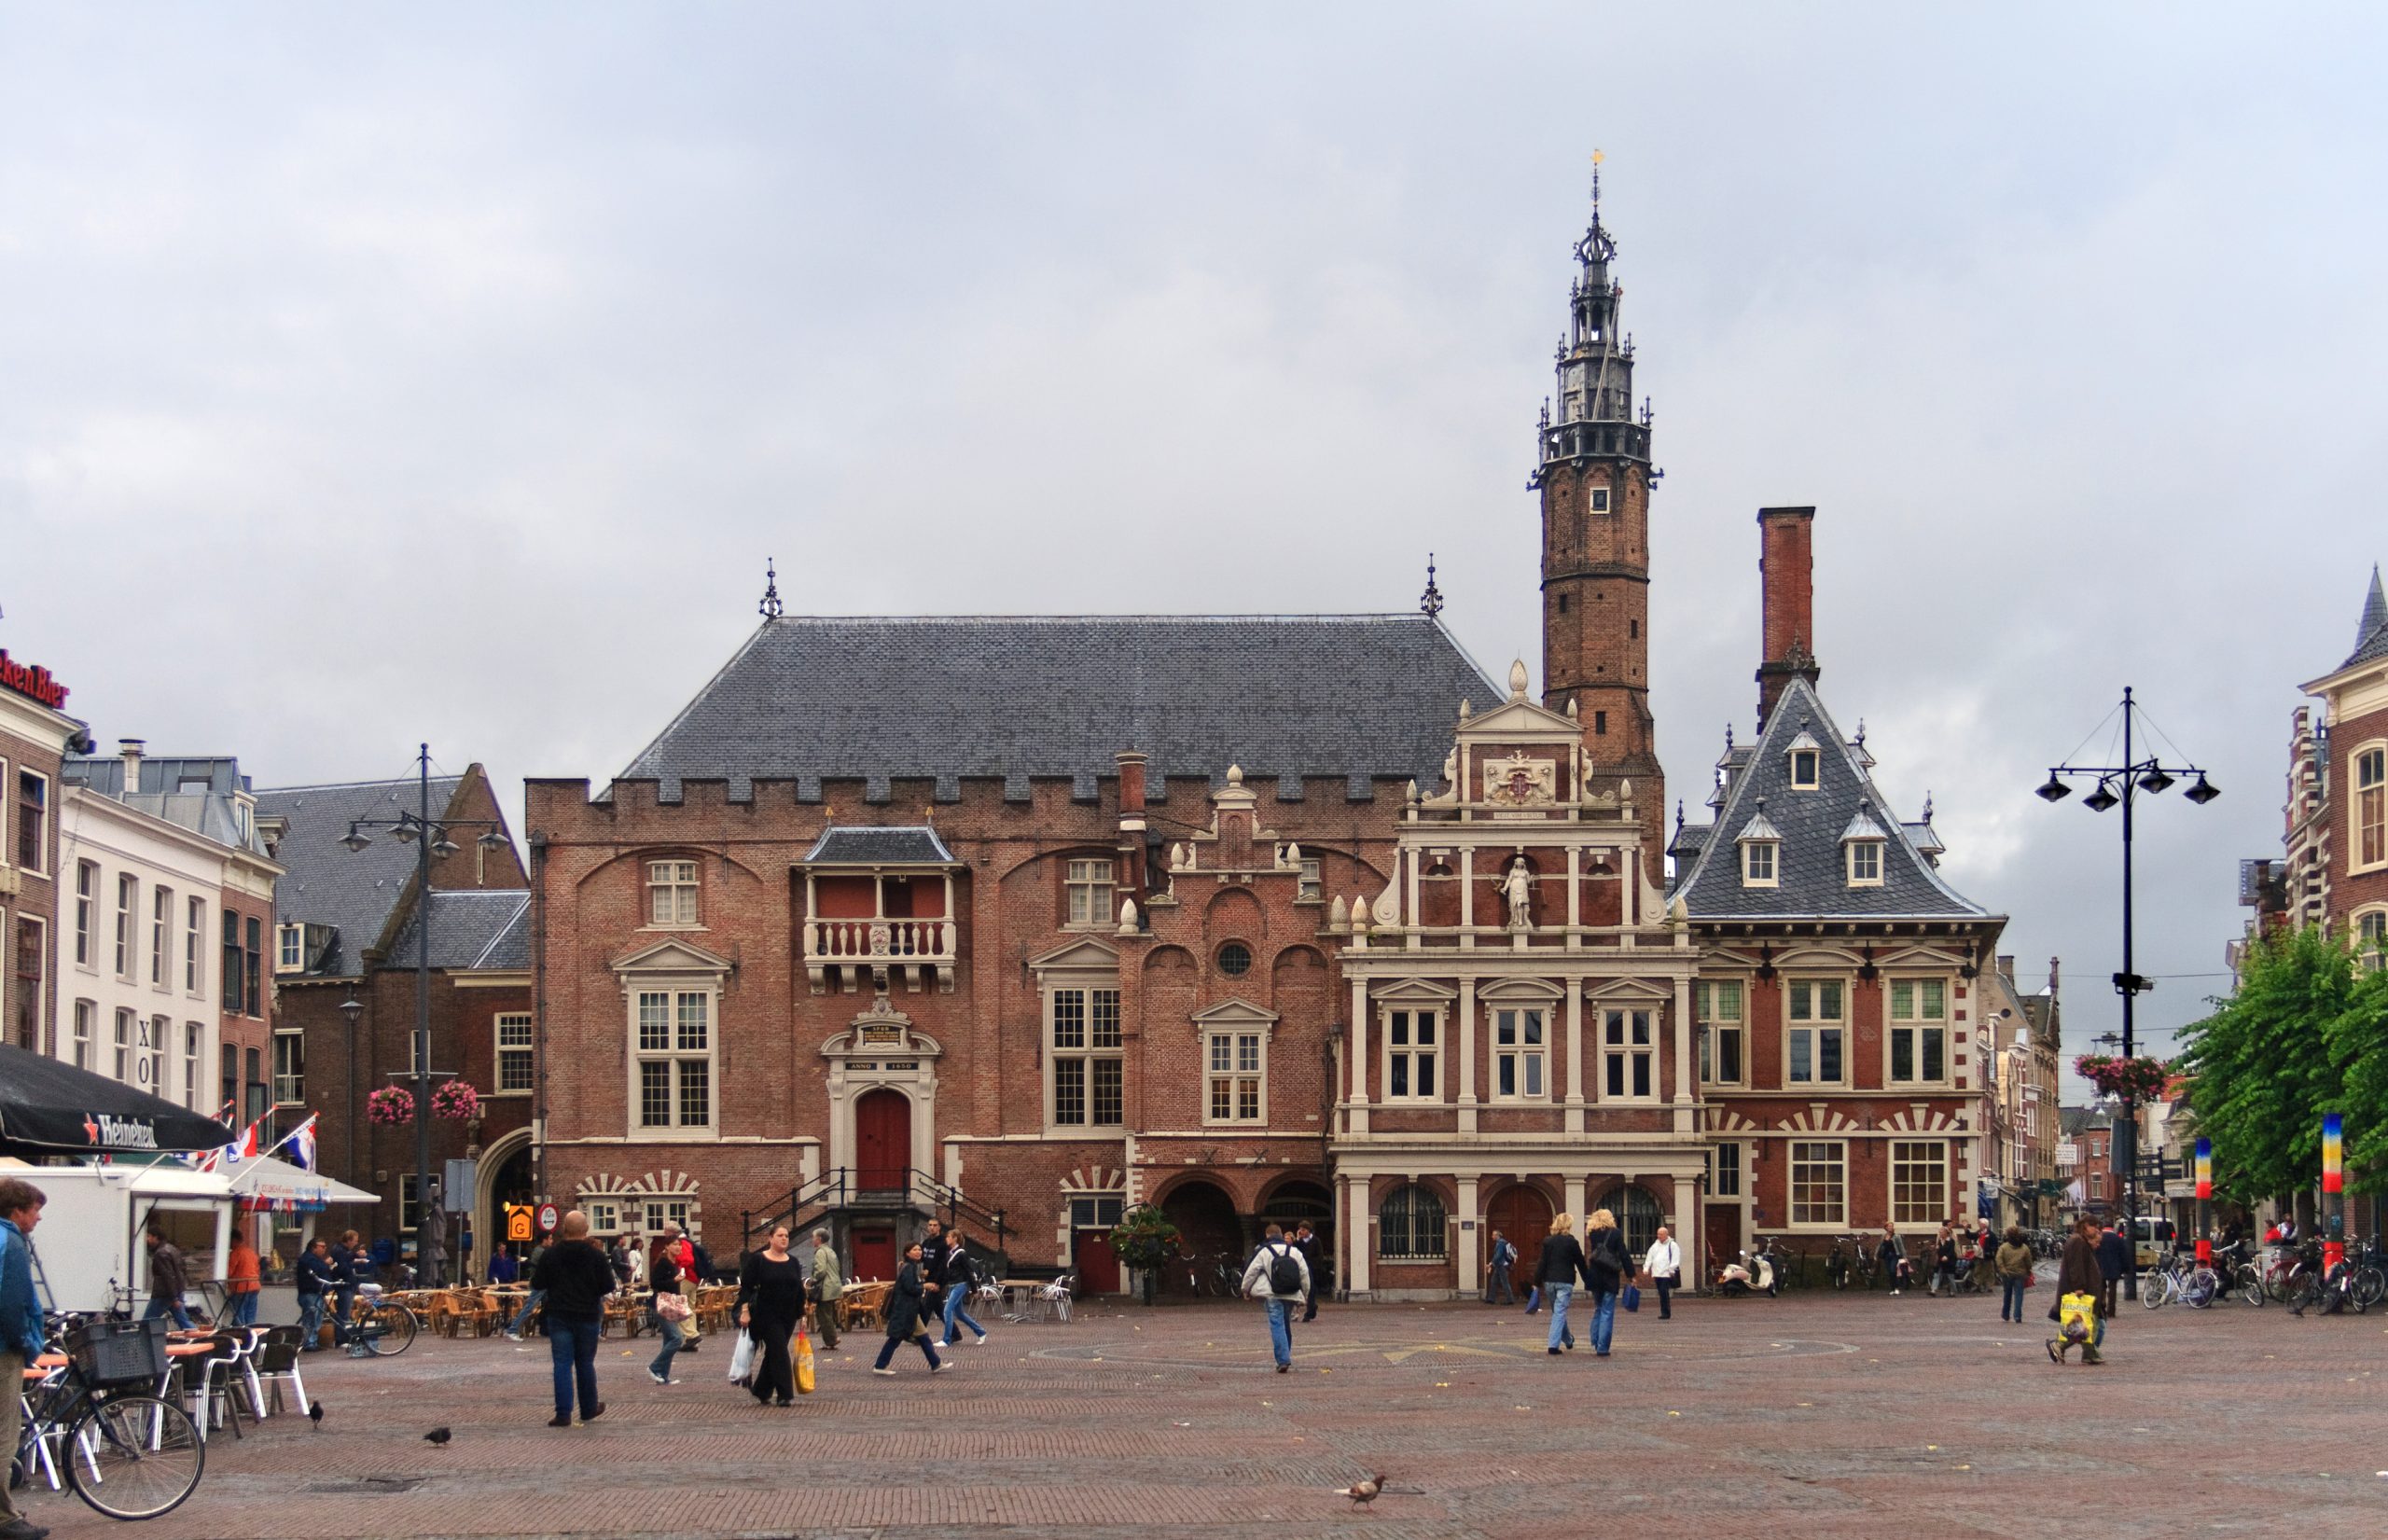 Huurteam Haarlem, Huurteam Haarlem